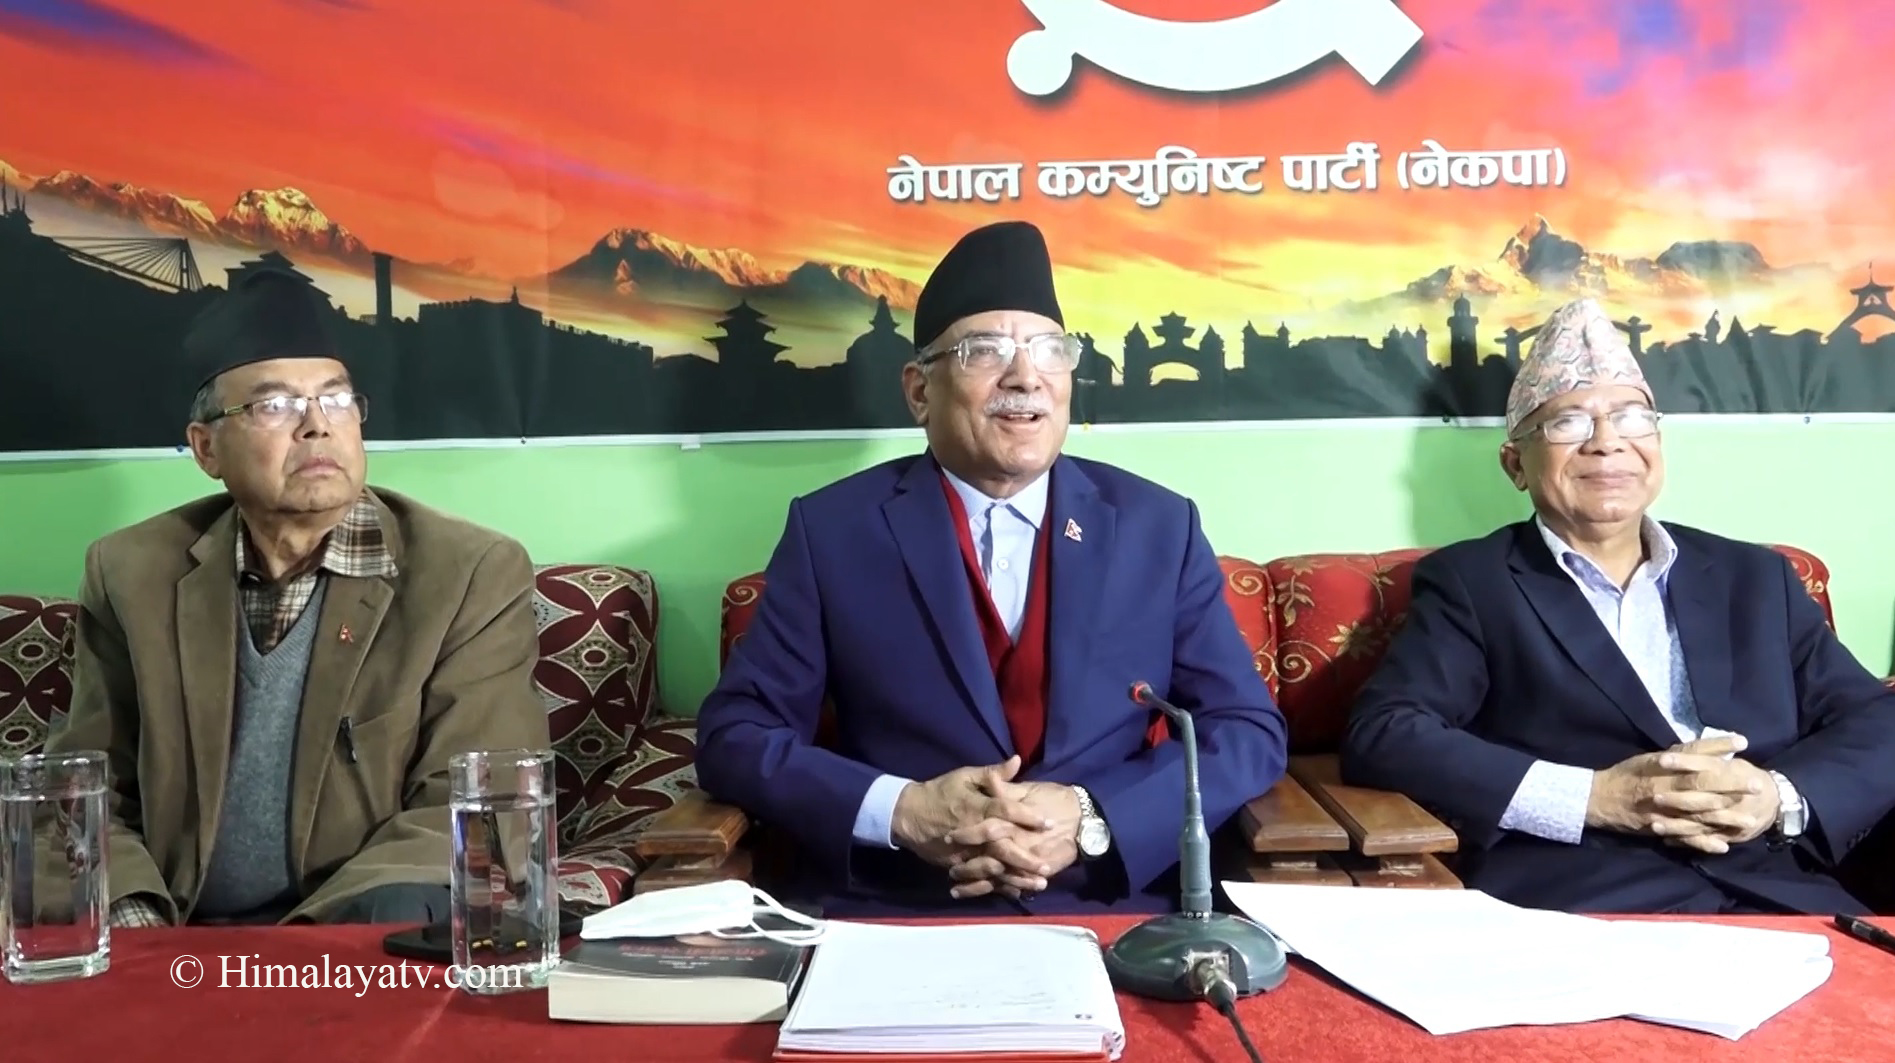 निर्वाचन आयोगमाथि दबाव दिन नेकपा प्रचण्ड–नेपाल समूह आक्रामक हुने